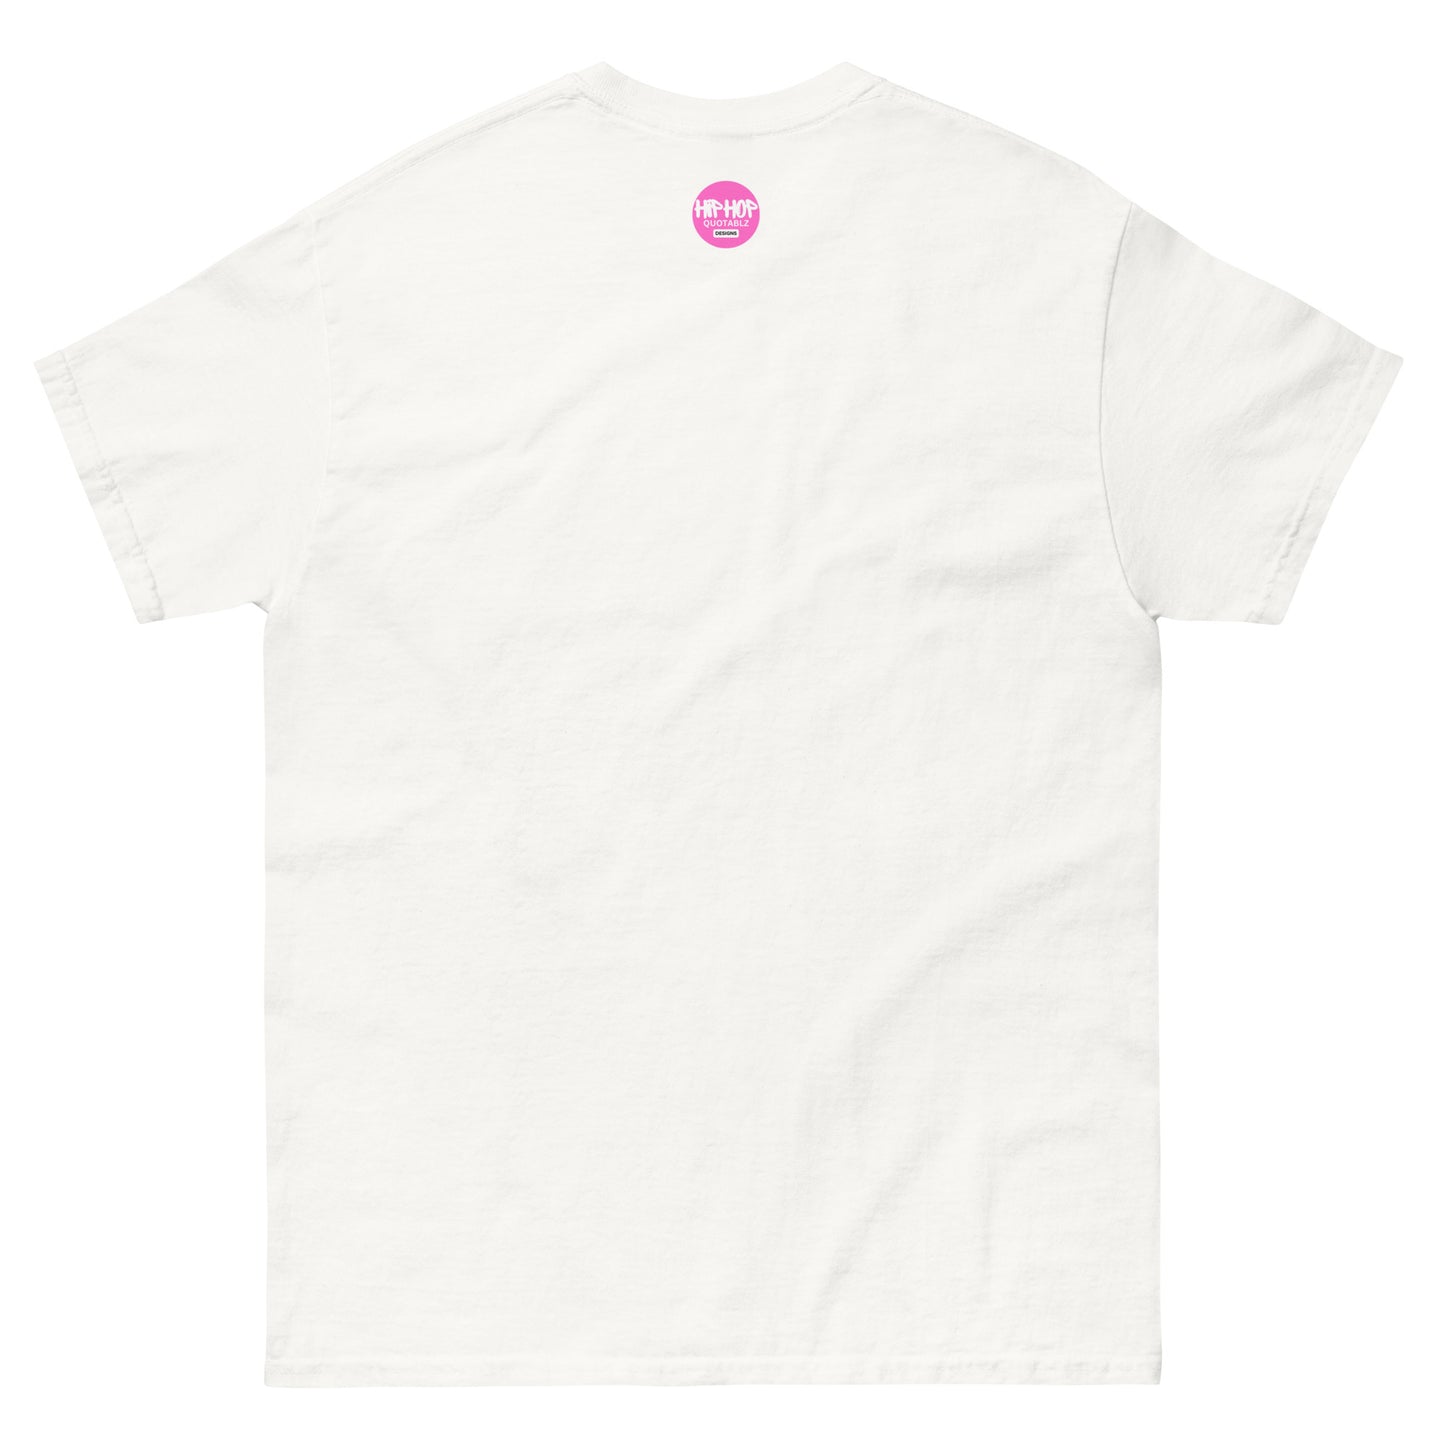 Pink Heart Five Star T-Shirt